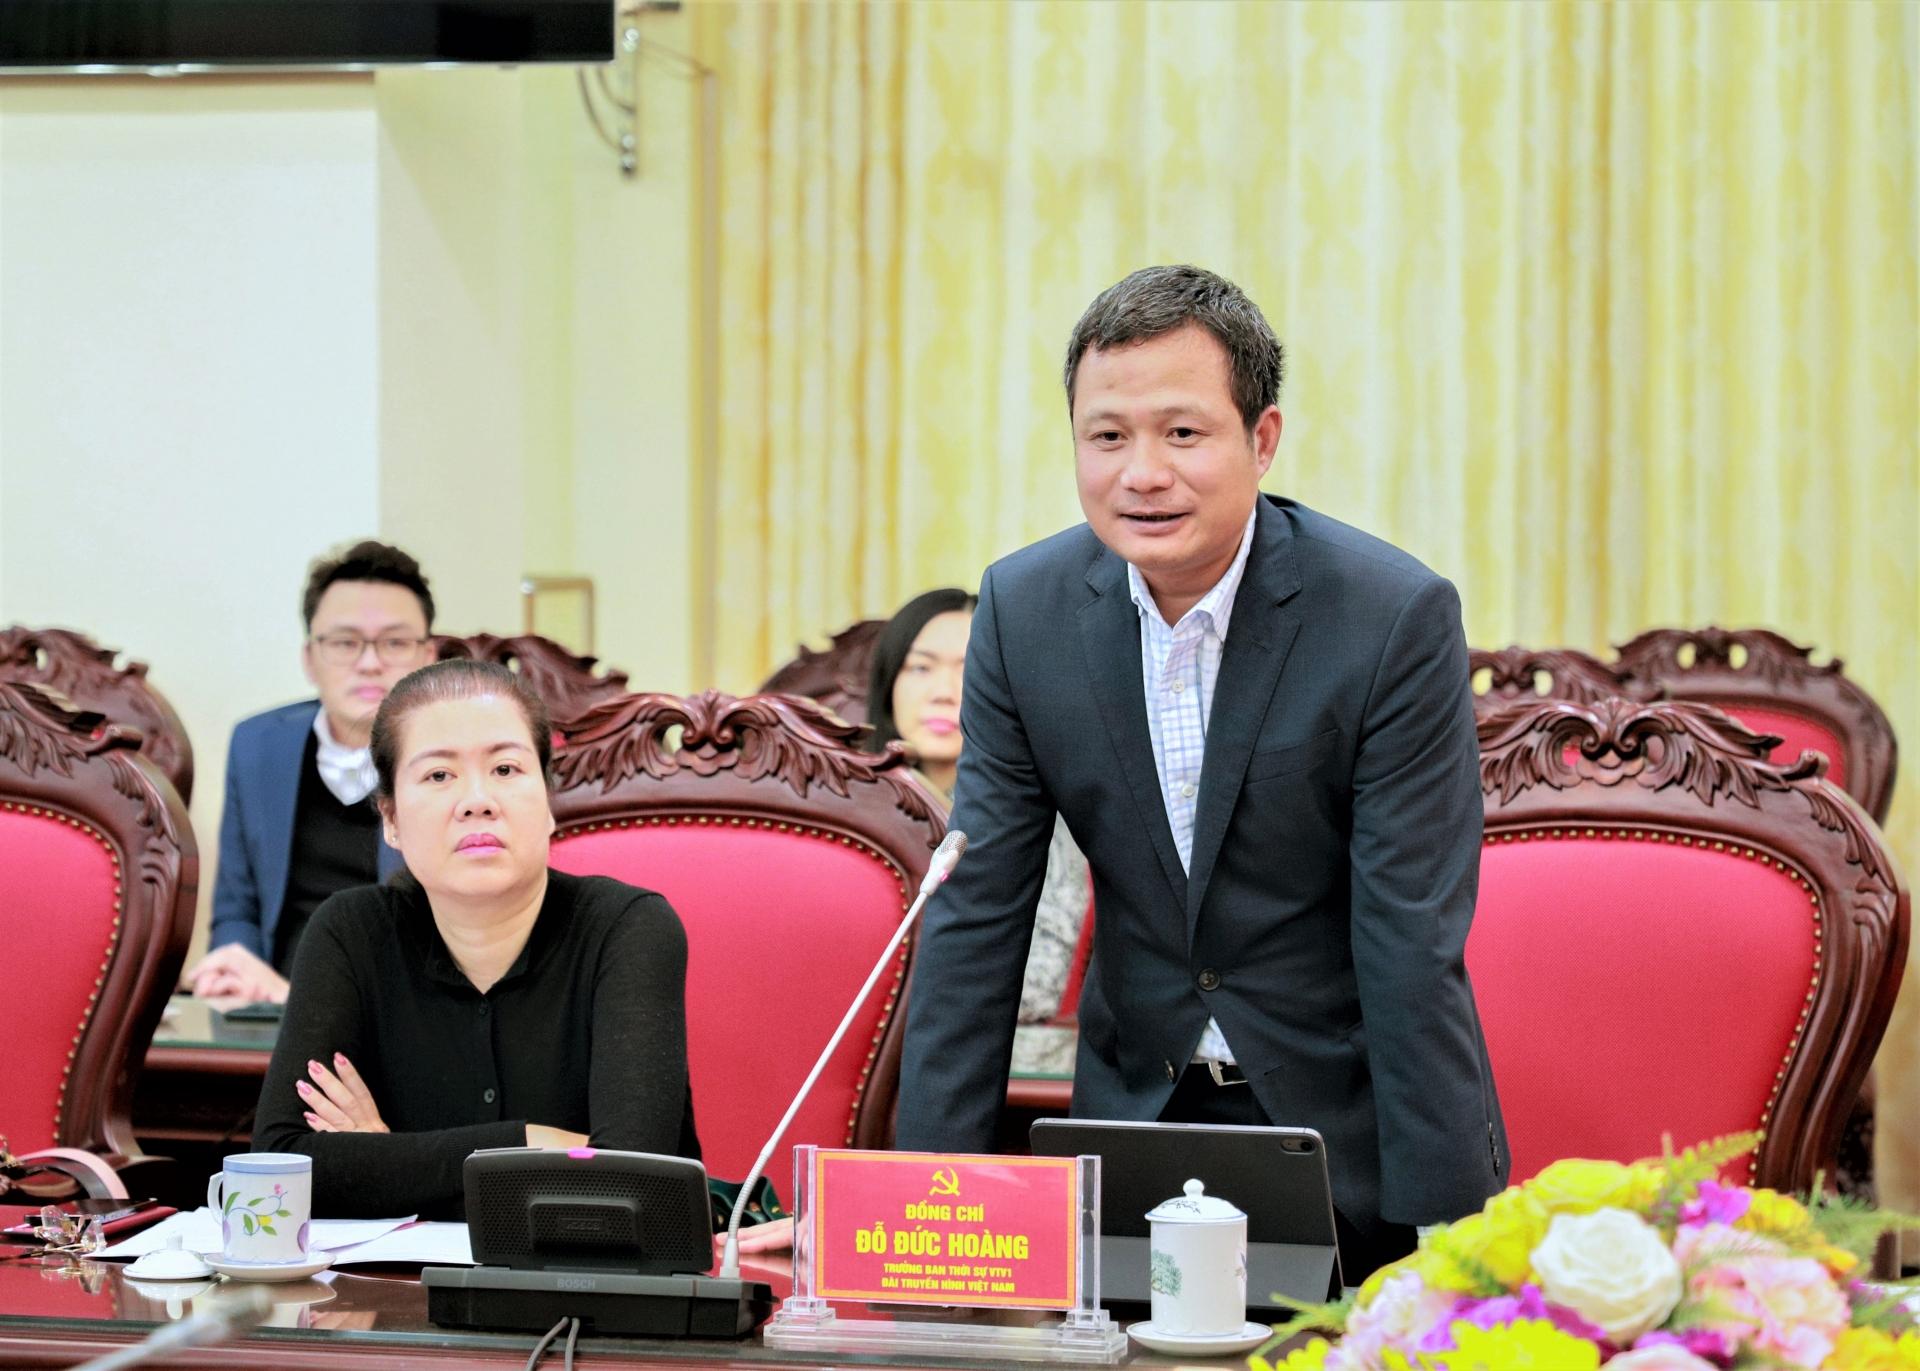 Trưởng ban Thời sự, Đài Truyền hình Việt Nam Đỗ Đức Hoàng phát biểu tại buổi ký kết.